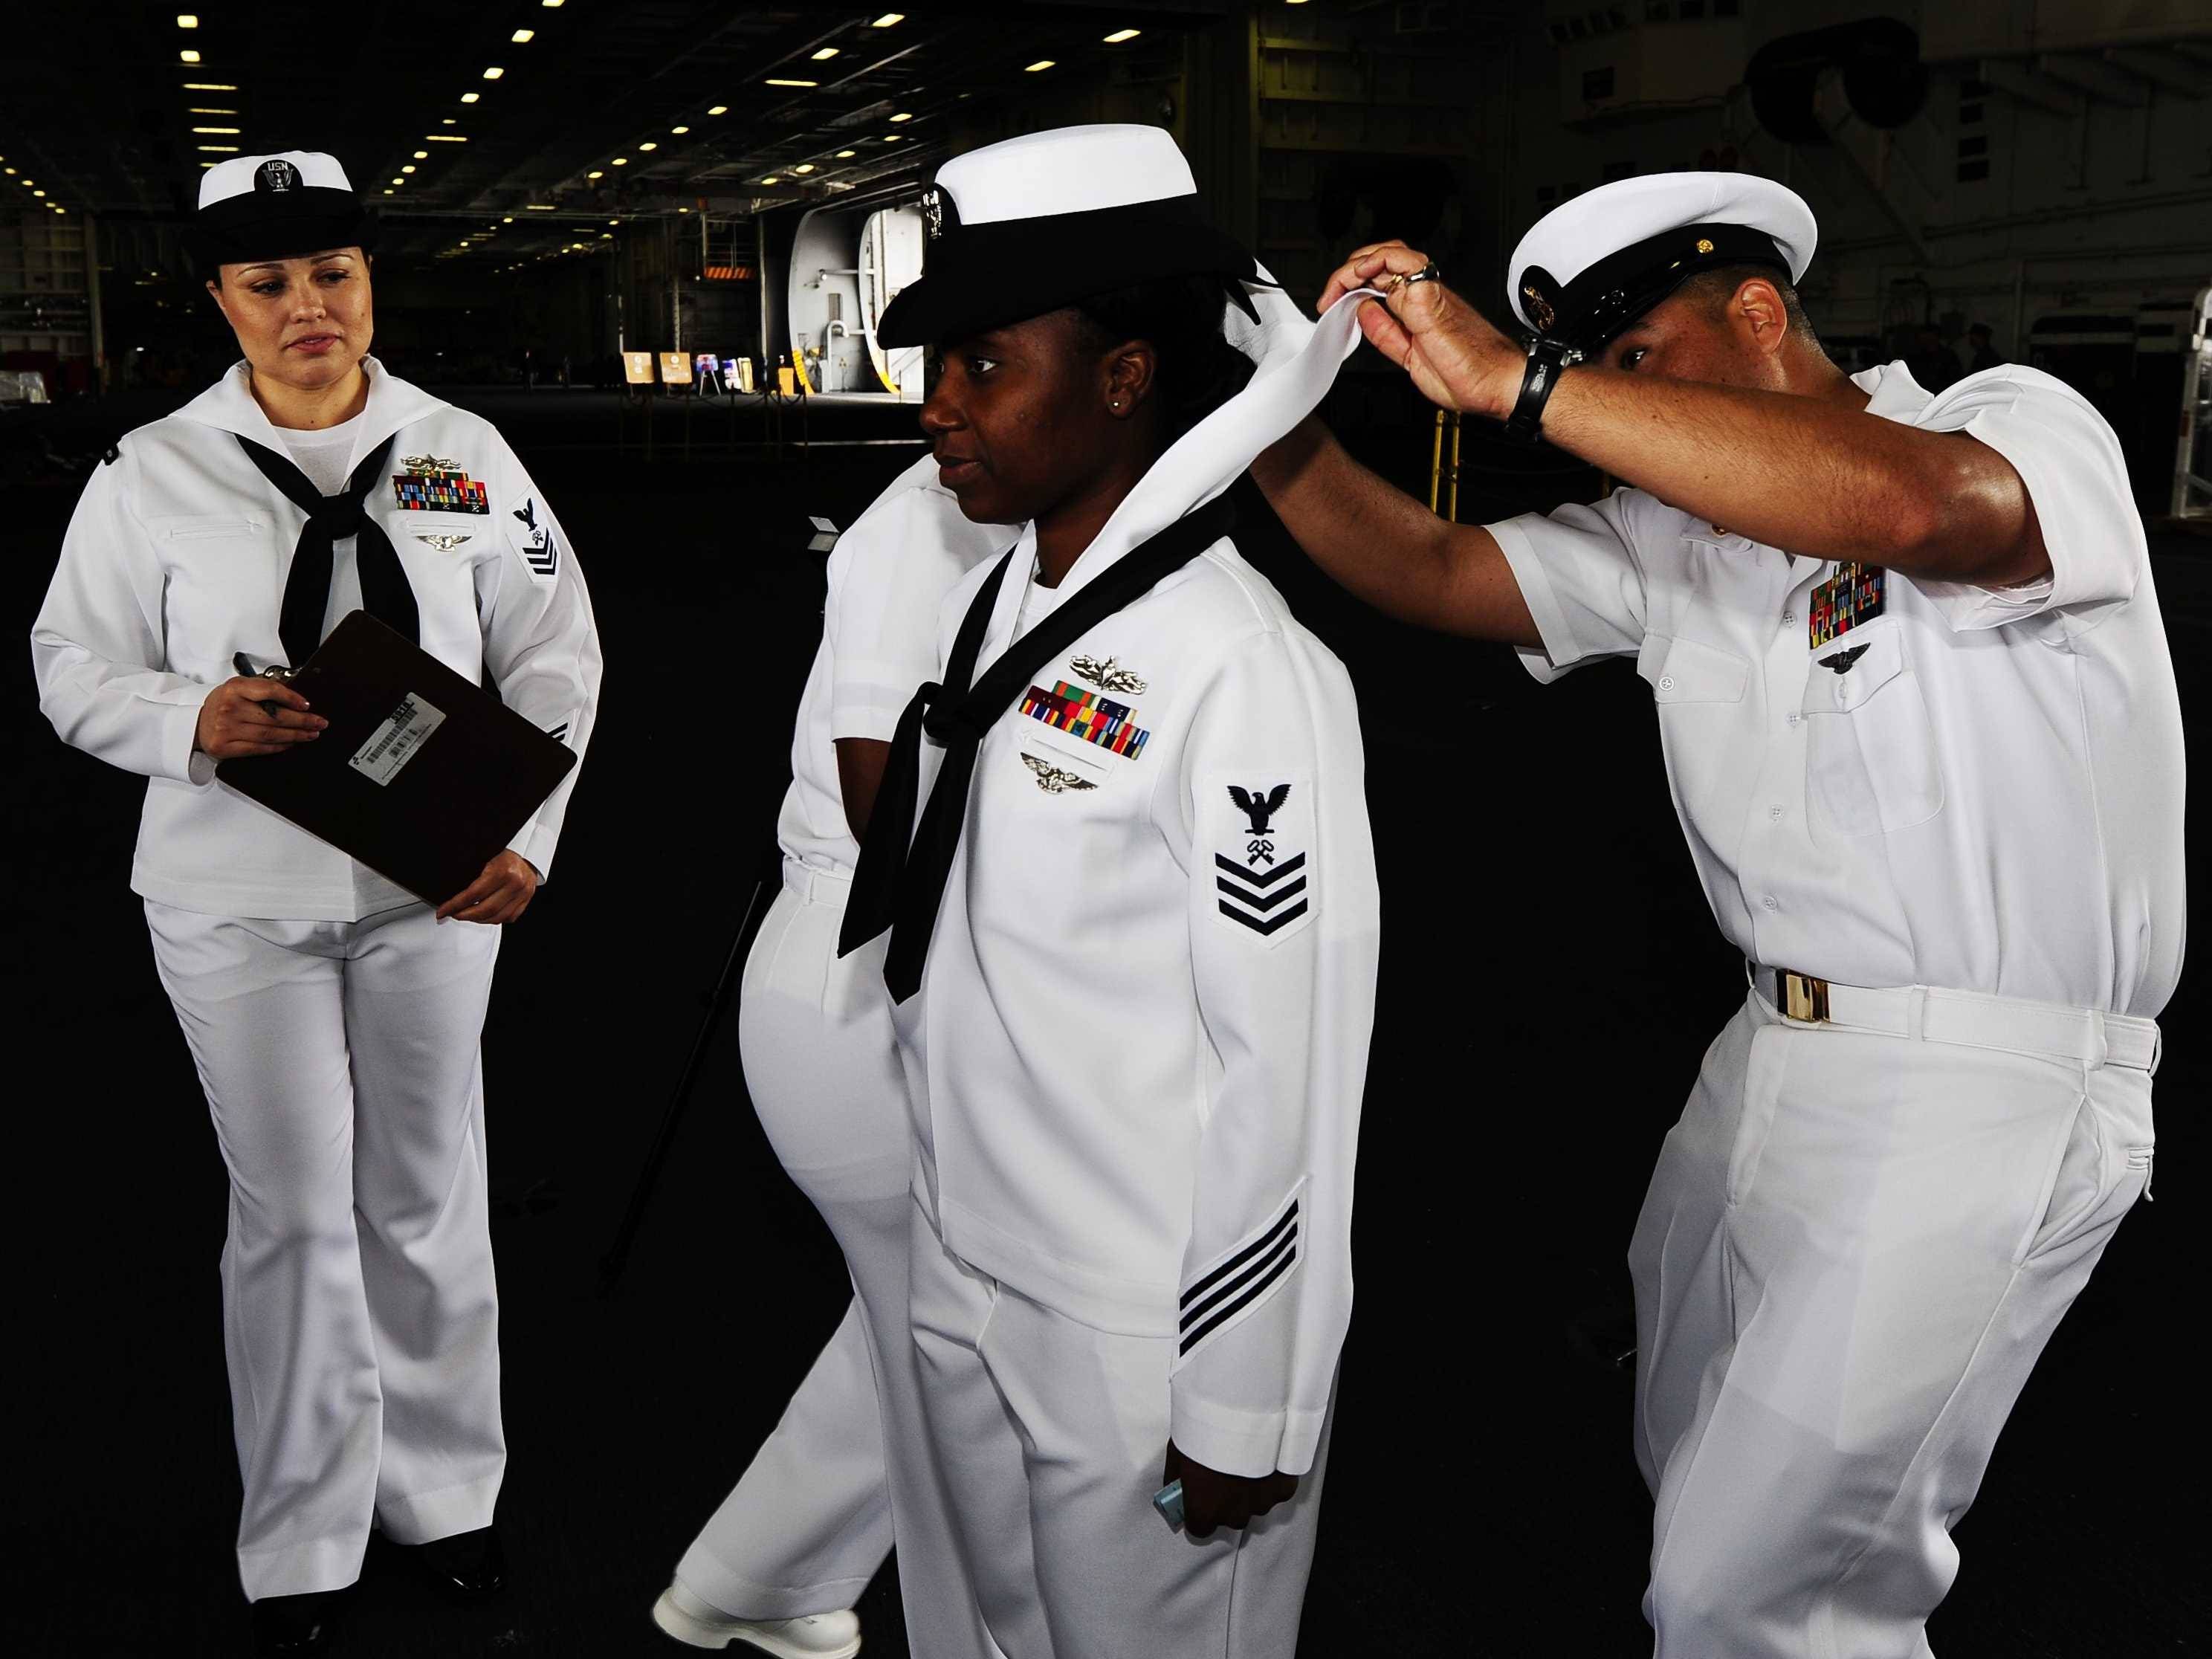 navy-uniform-inspection.jpg